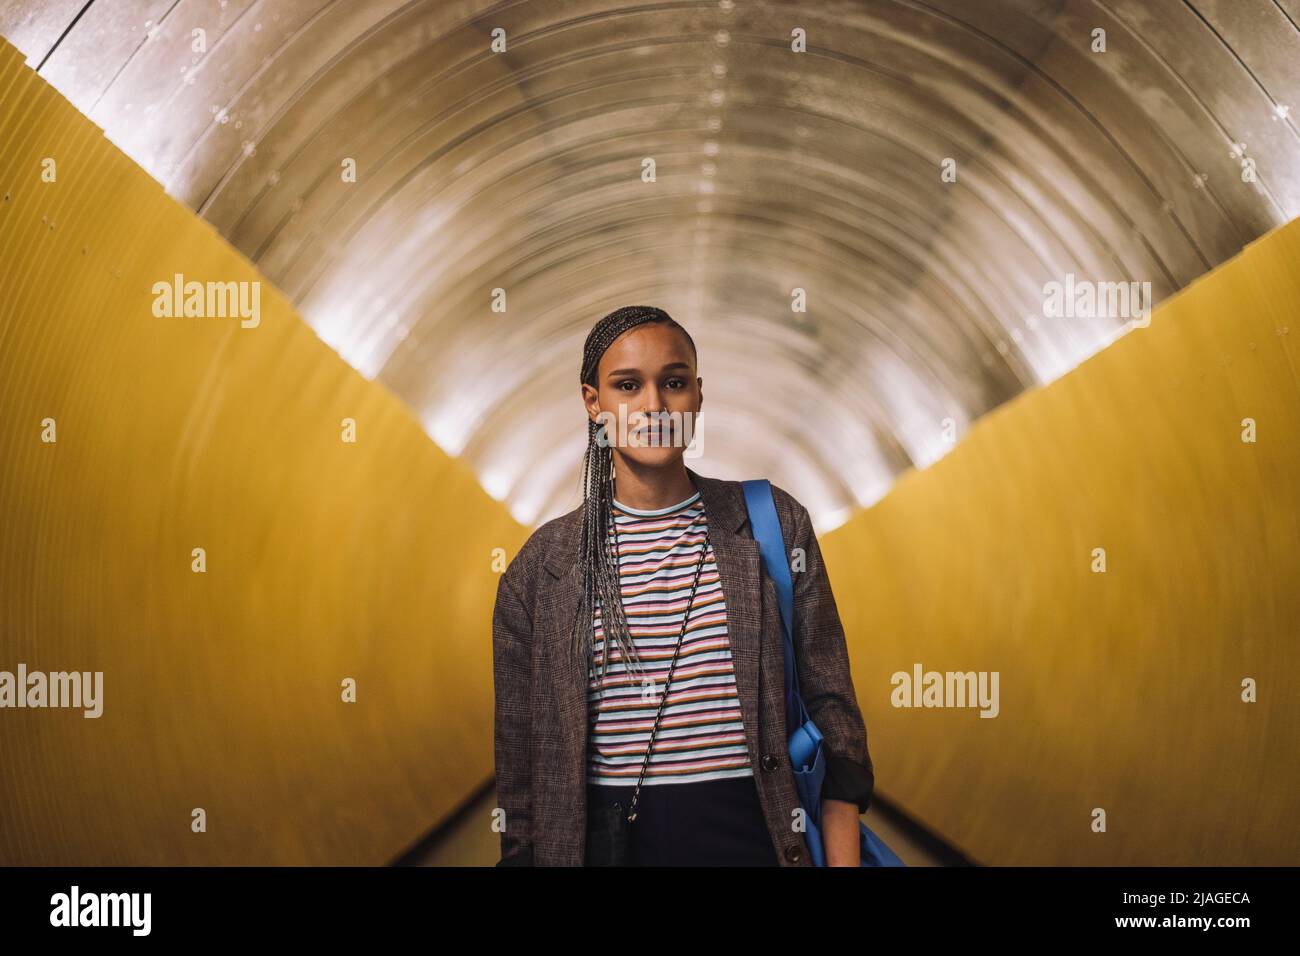 Ritratto di giovane donna sorridente con capelli intrecciati in piedi nel tunnel della metropolitana Foto Stock